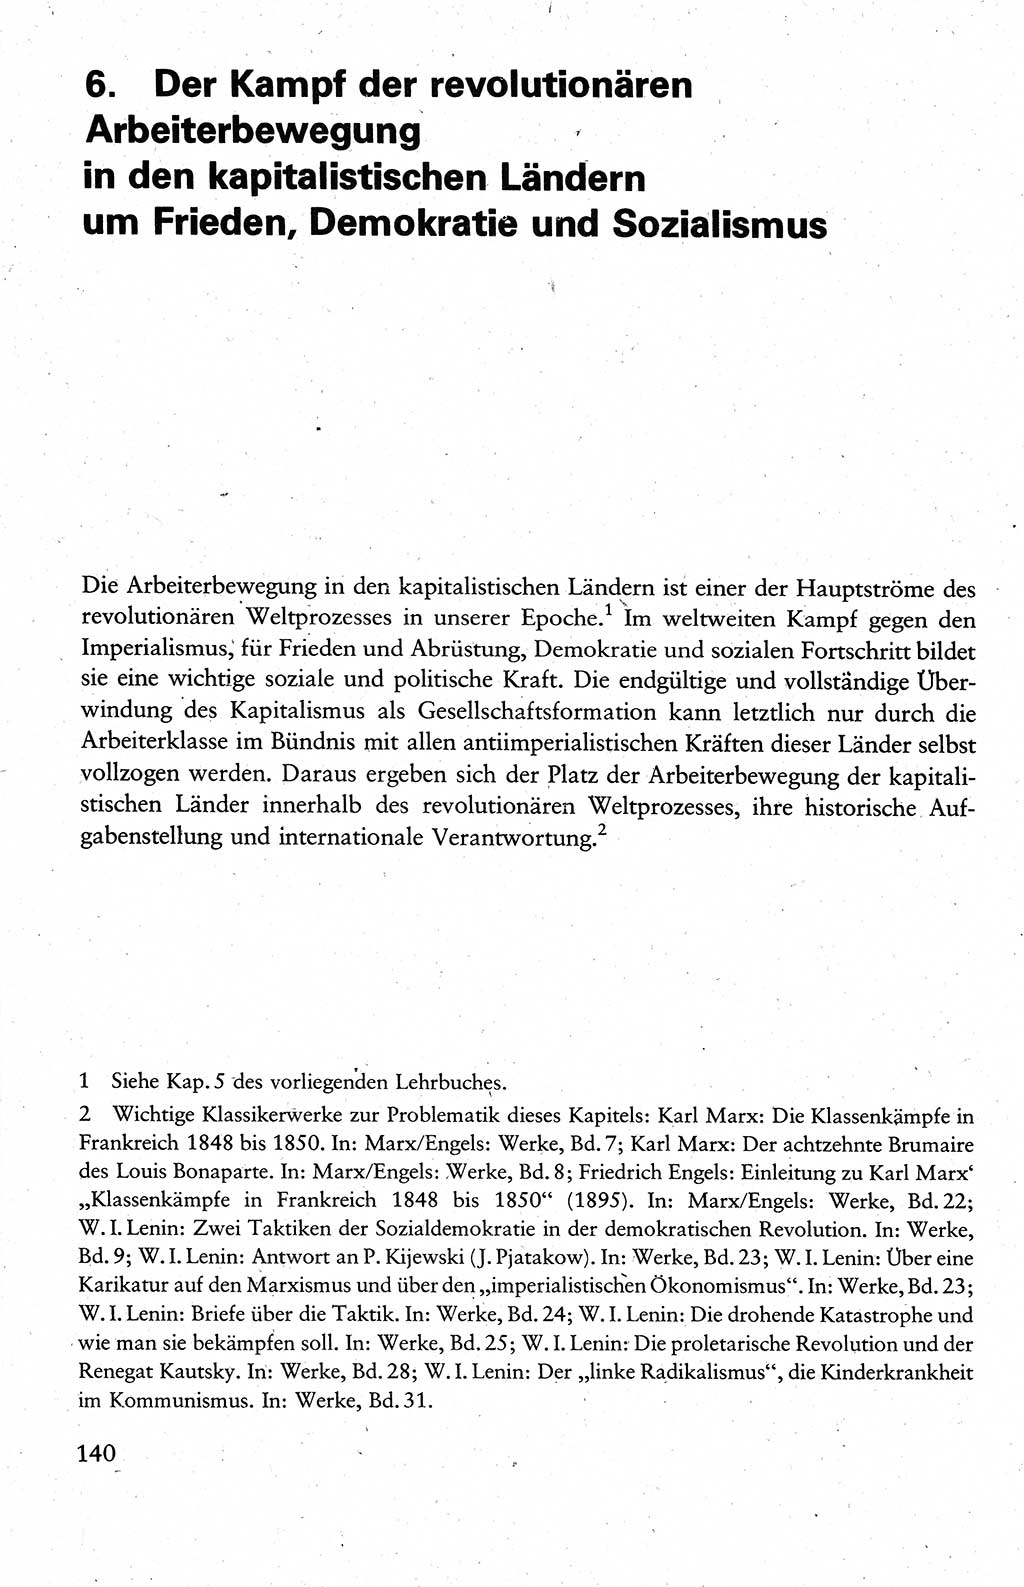 Wissenschaftlicher Kommunismus [Deutsche Demokratische Republik (DDR)], Lehrbuch für das marxistisch-leninistische Grundlagenstudium 1983, Seite 140 (Wiss. Komm. DDR Lb. 1983, S. 140)